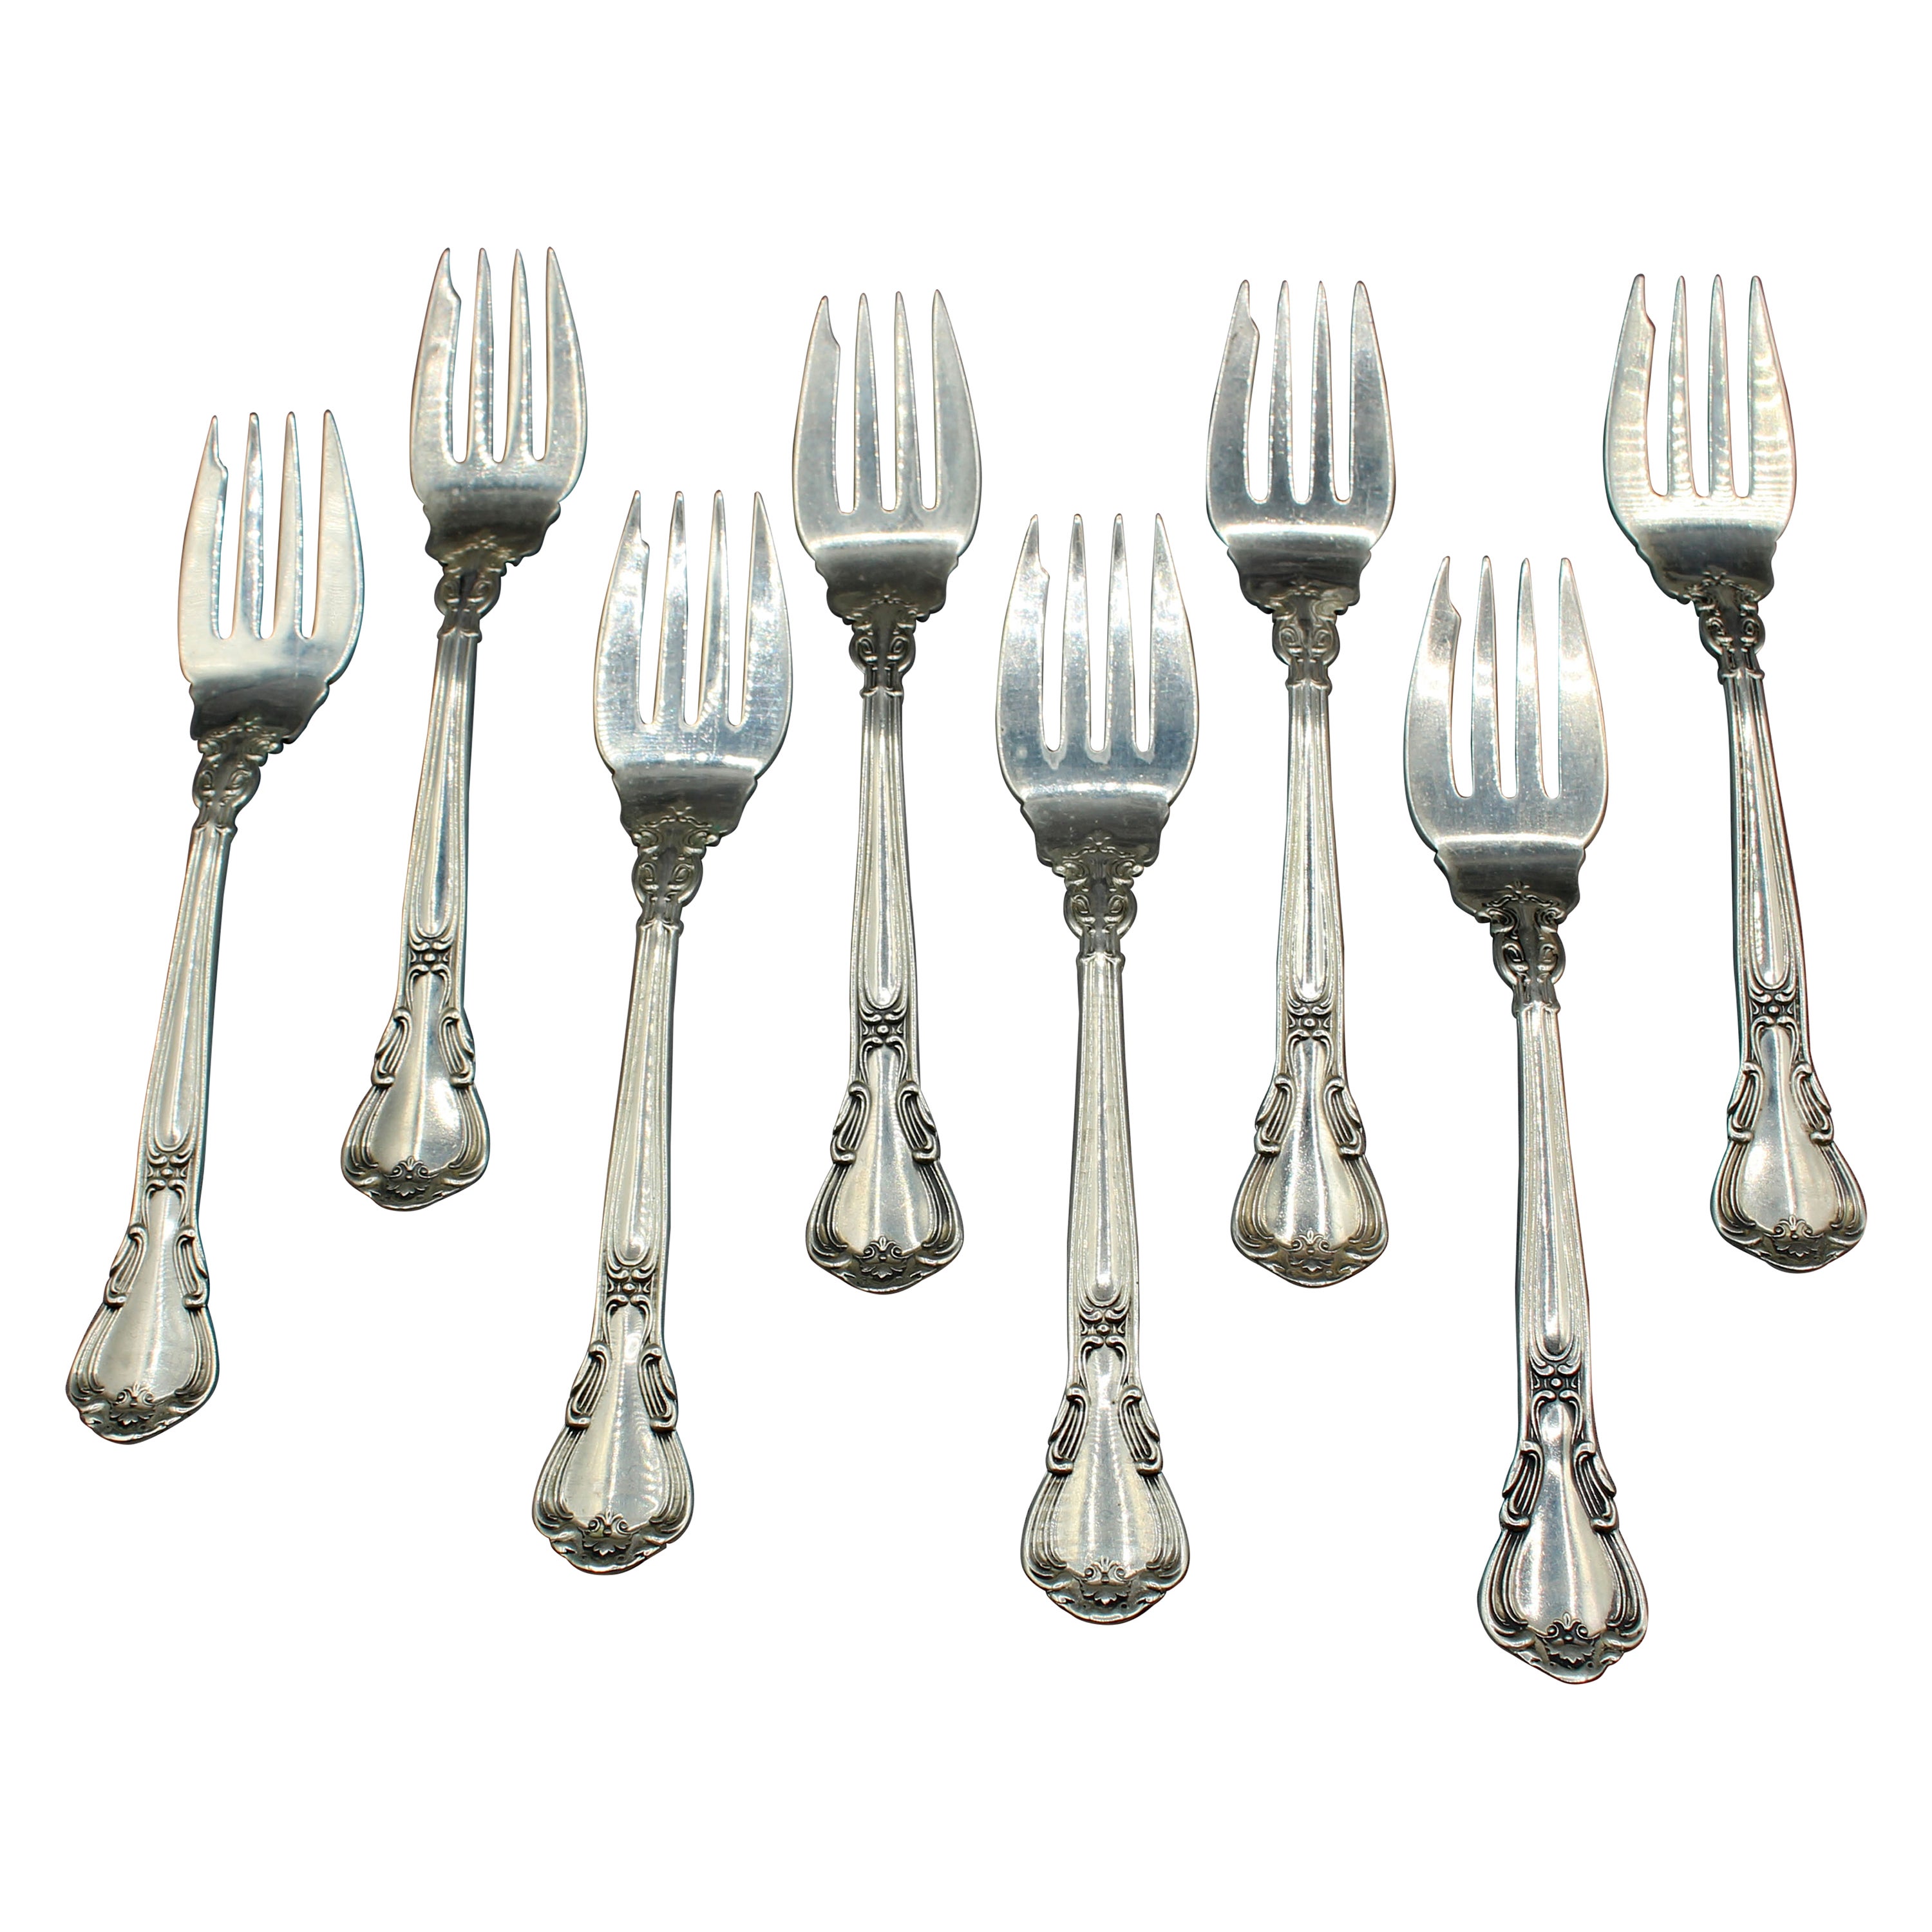 Set of 8 Chantilly Sterling Silver Salad or Dessert Forks by Gorham For Sale